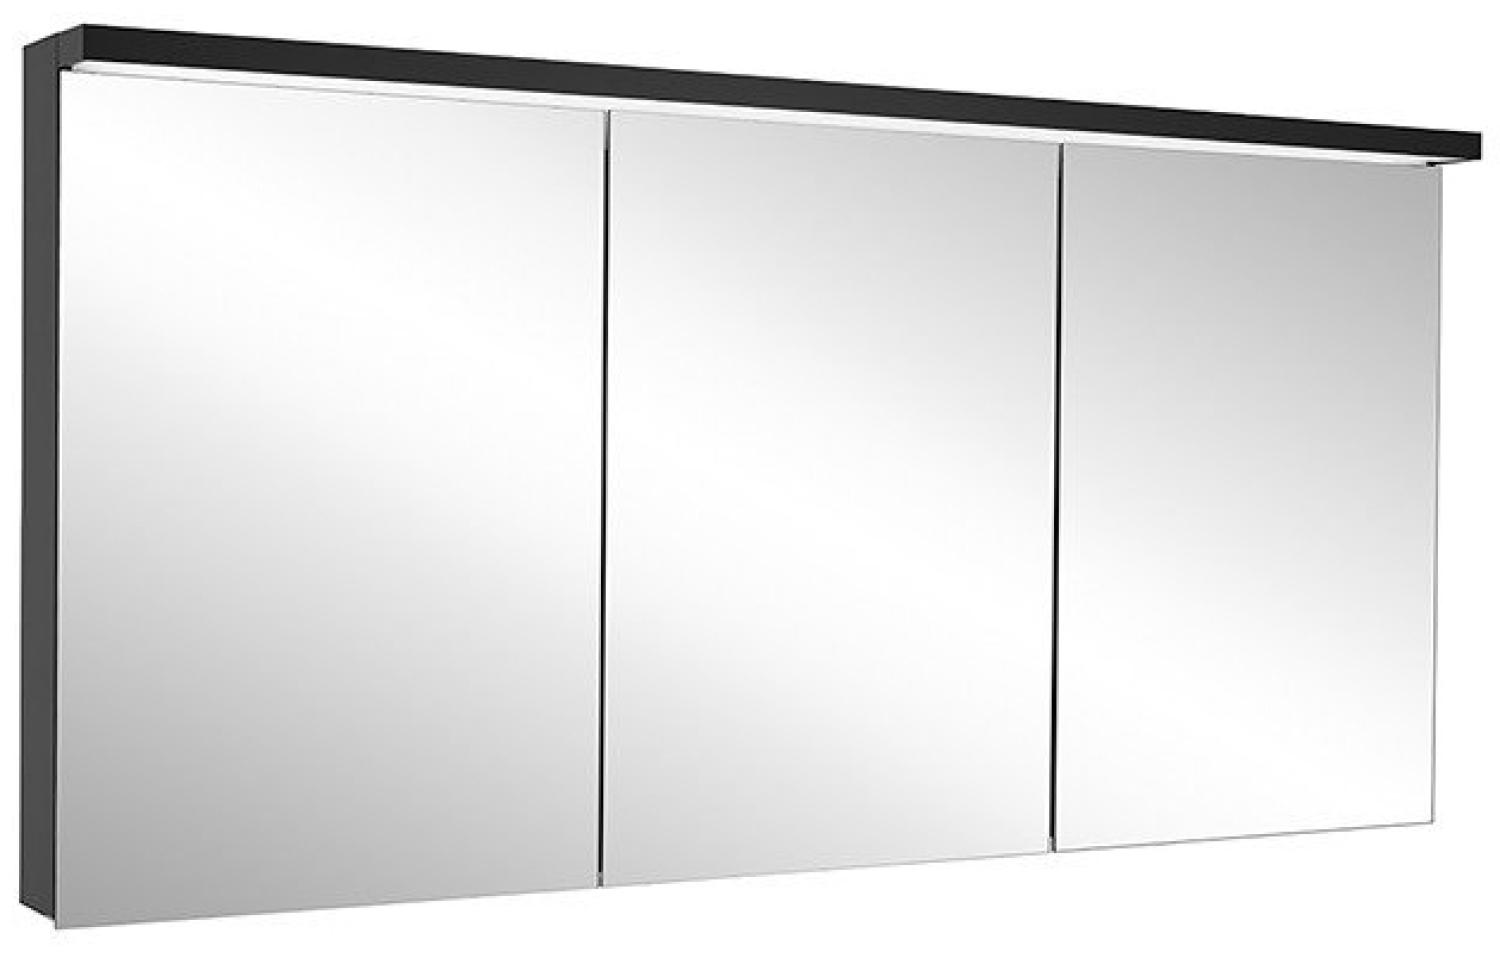 Schneider ADVANCED Line Ultimate LED Lichtspiegelschrank, 3 gleichgrosse Türen, 179,5x72,6x17,8cm, 188. 180, Ausführung: EU-Norm/Korpus schwarz matt - 188. 180. 02. 41 Bild 1